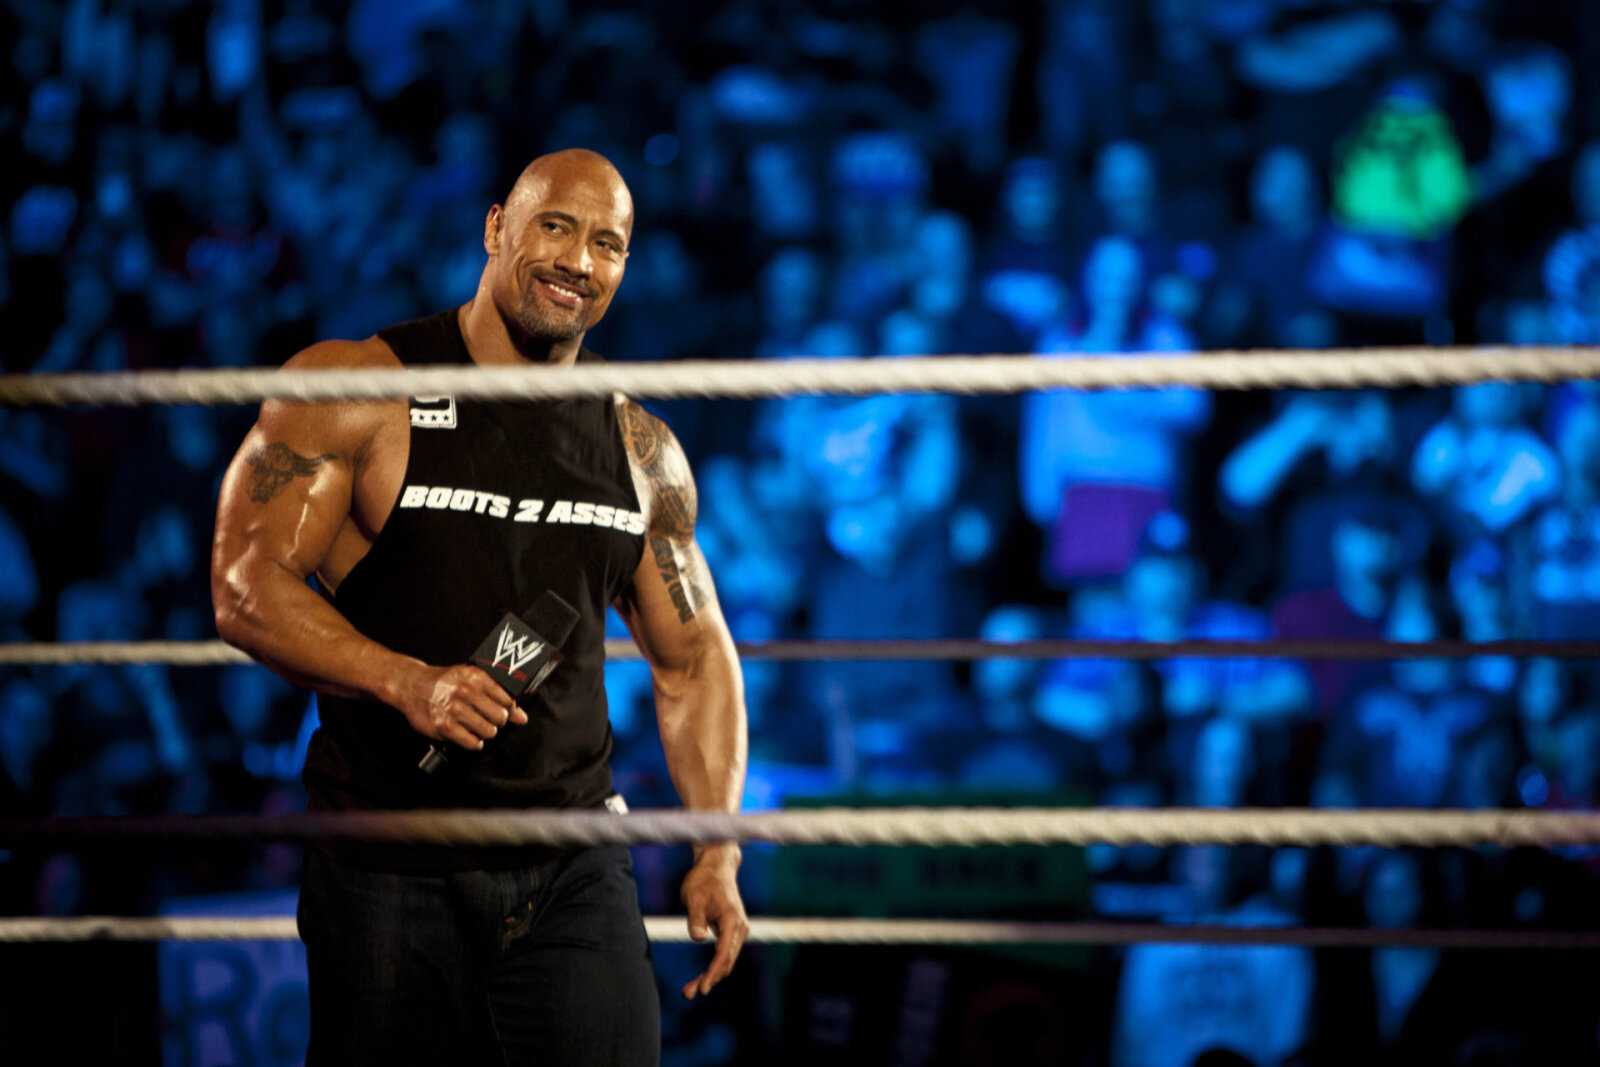 "La plus longue attente de votre vie est terminée" - La superstar de la WWE, Dwayne Johnson, envoie un message aux athlètes liés aux Jeux olympiques de Tokyo